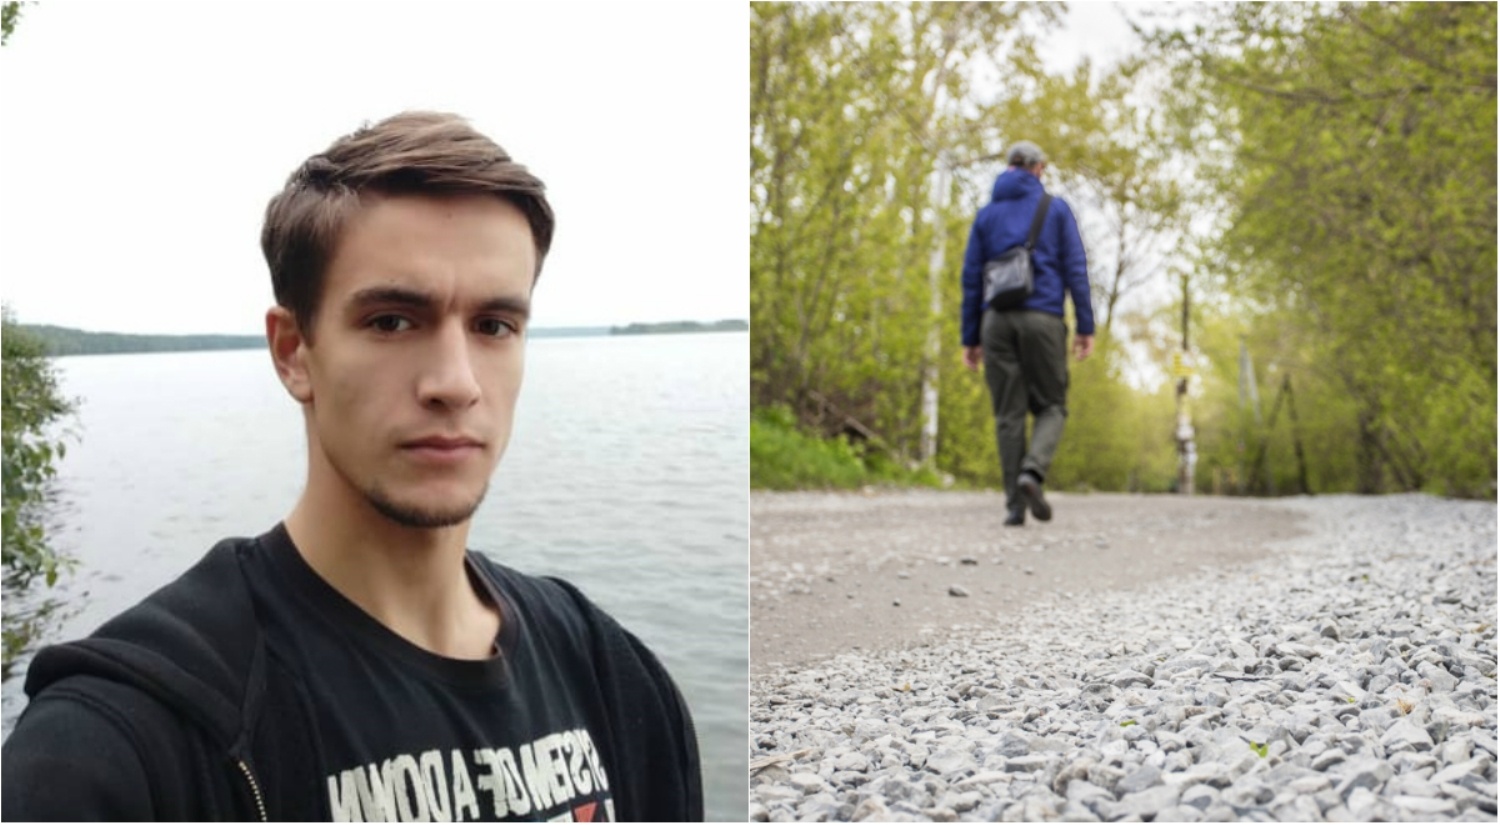 Ушёл из хостела и не вернулся: в Новосибирске три дня ищут пропавшего туриста